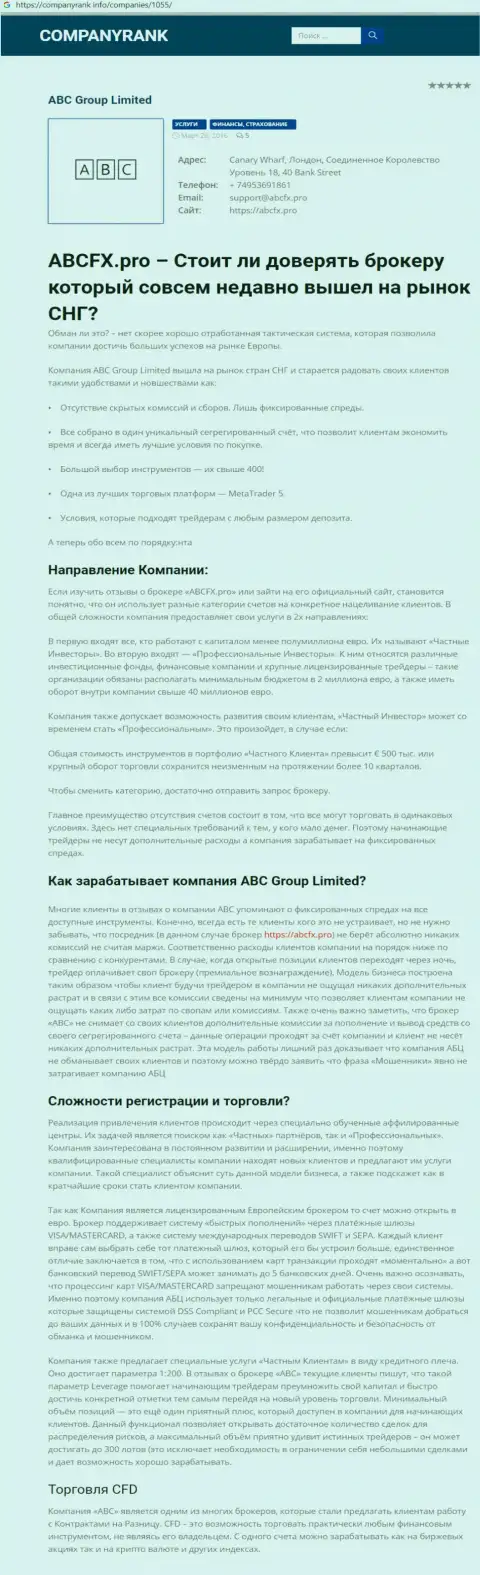 О брокерской компании AbcFx Pro на web-площадке companyrank info